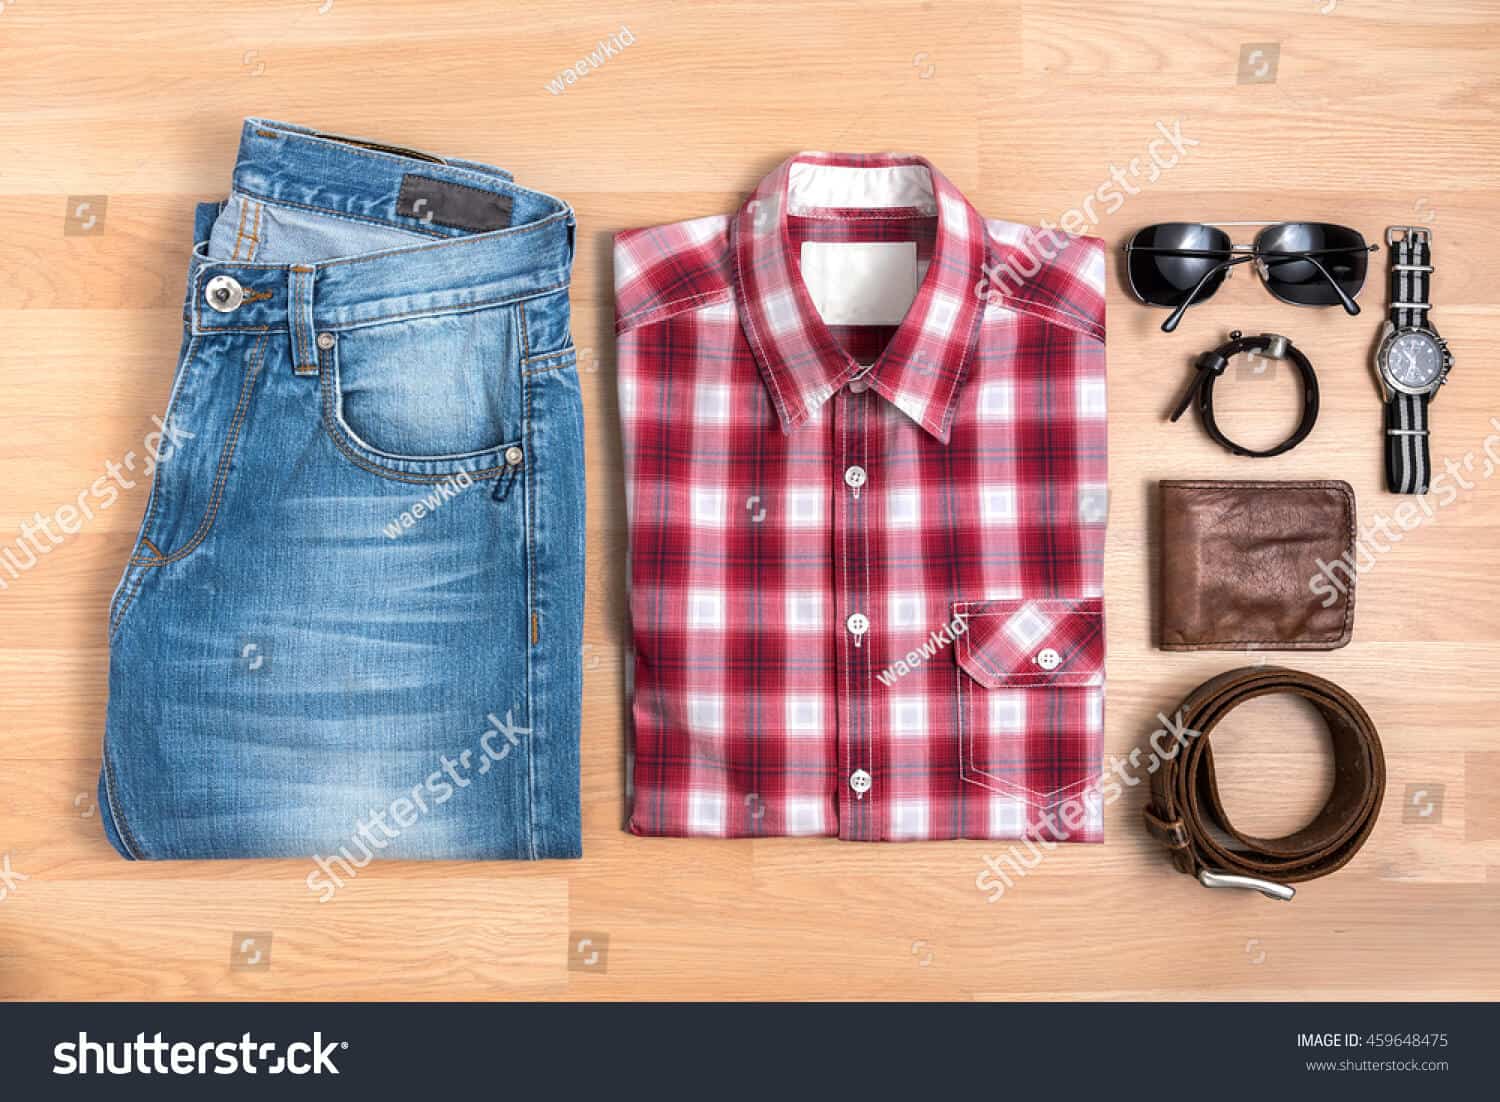 195 ngàn hình ảnh thời trang nam chất lượng cao trên Shutterstock